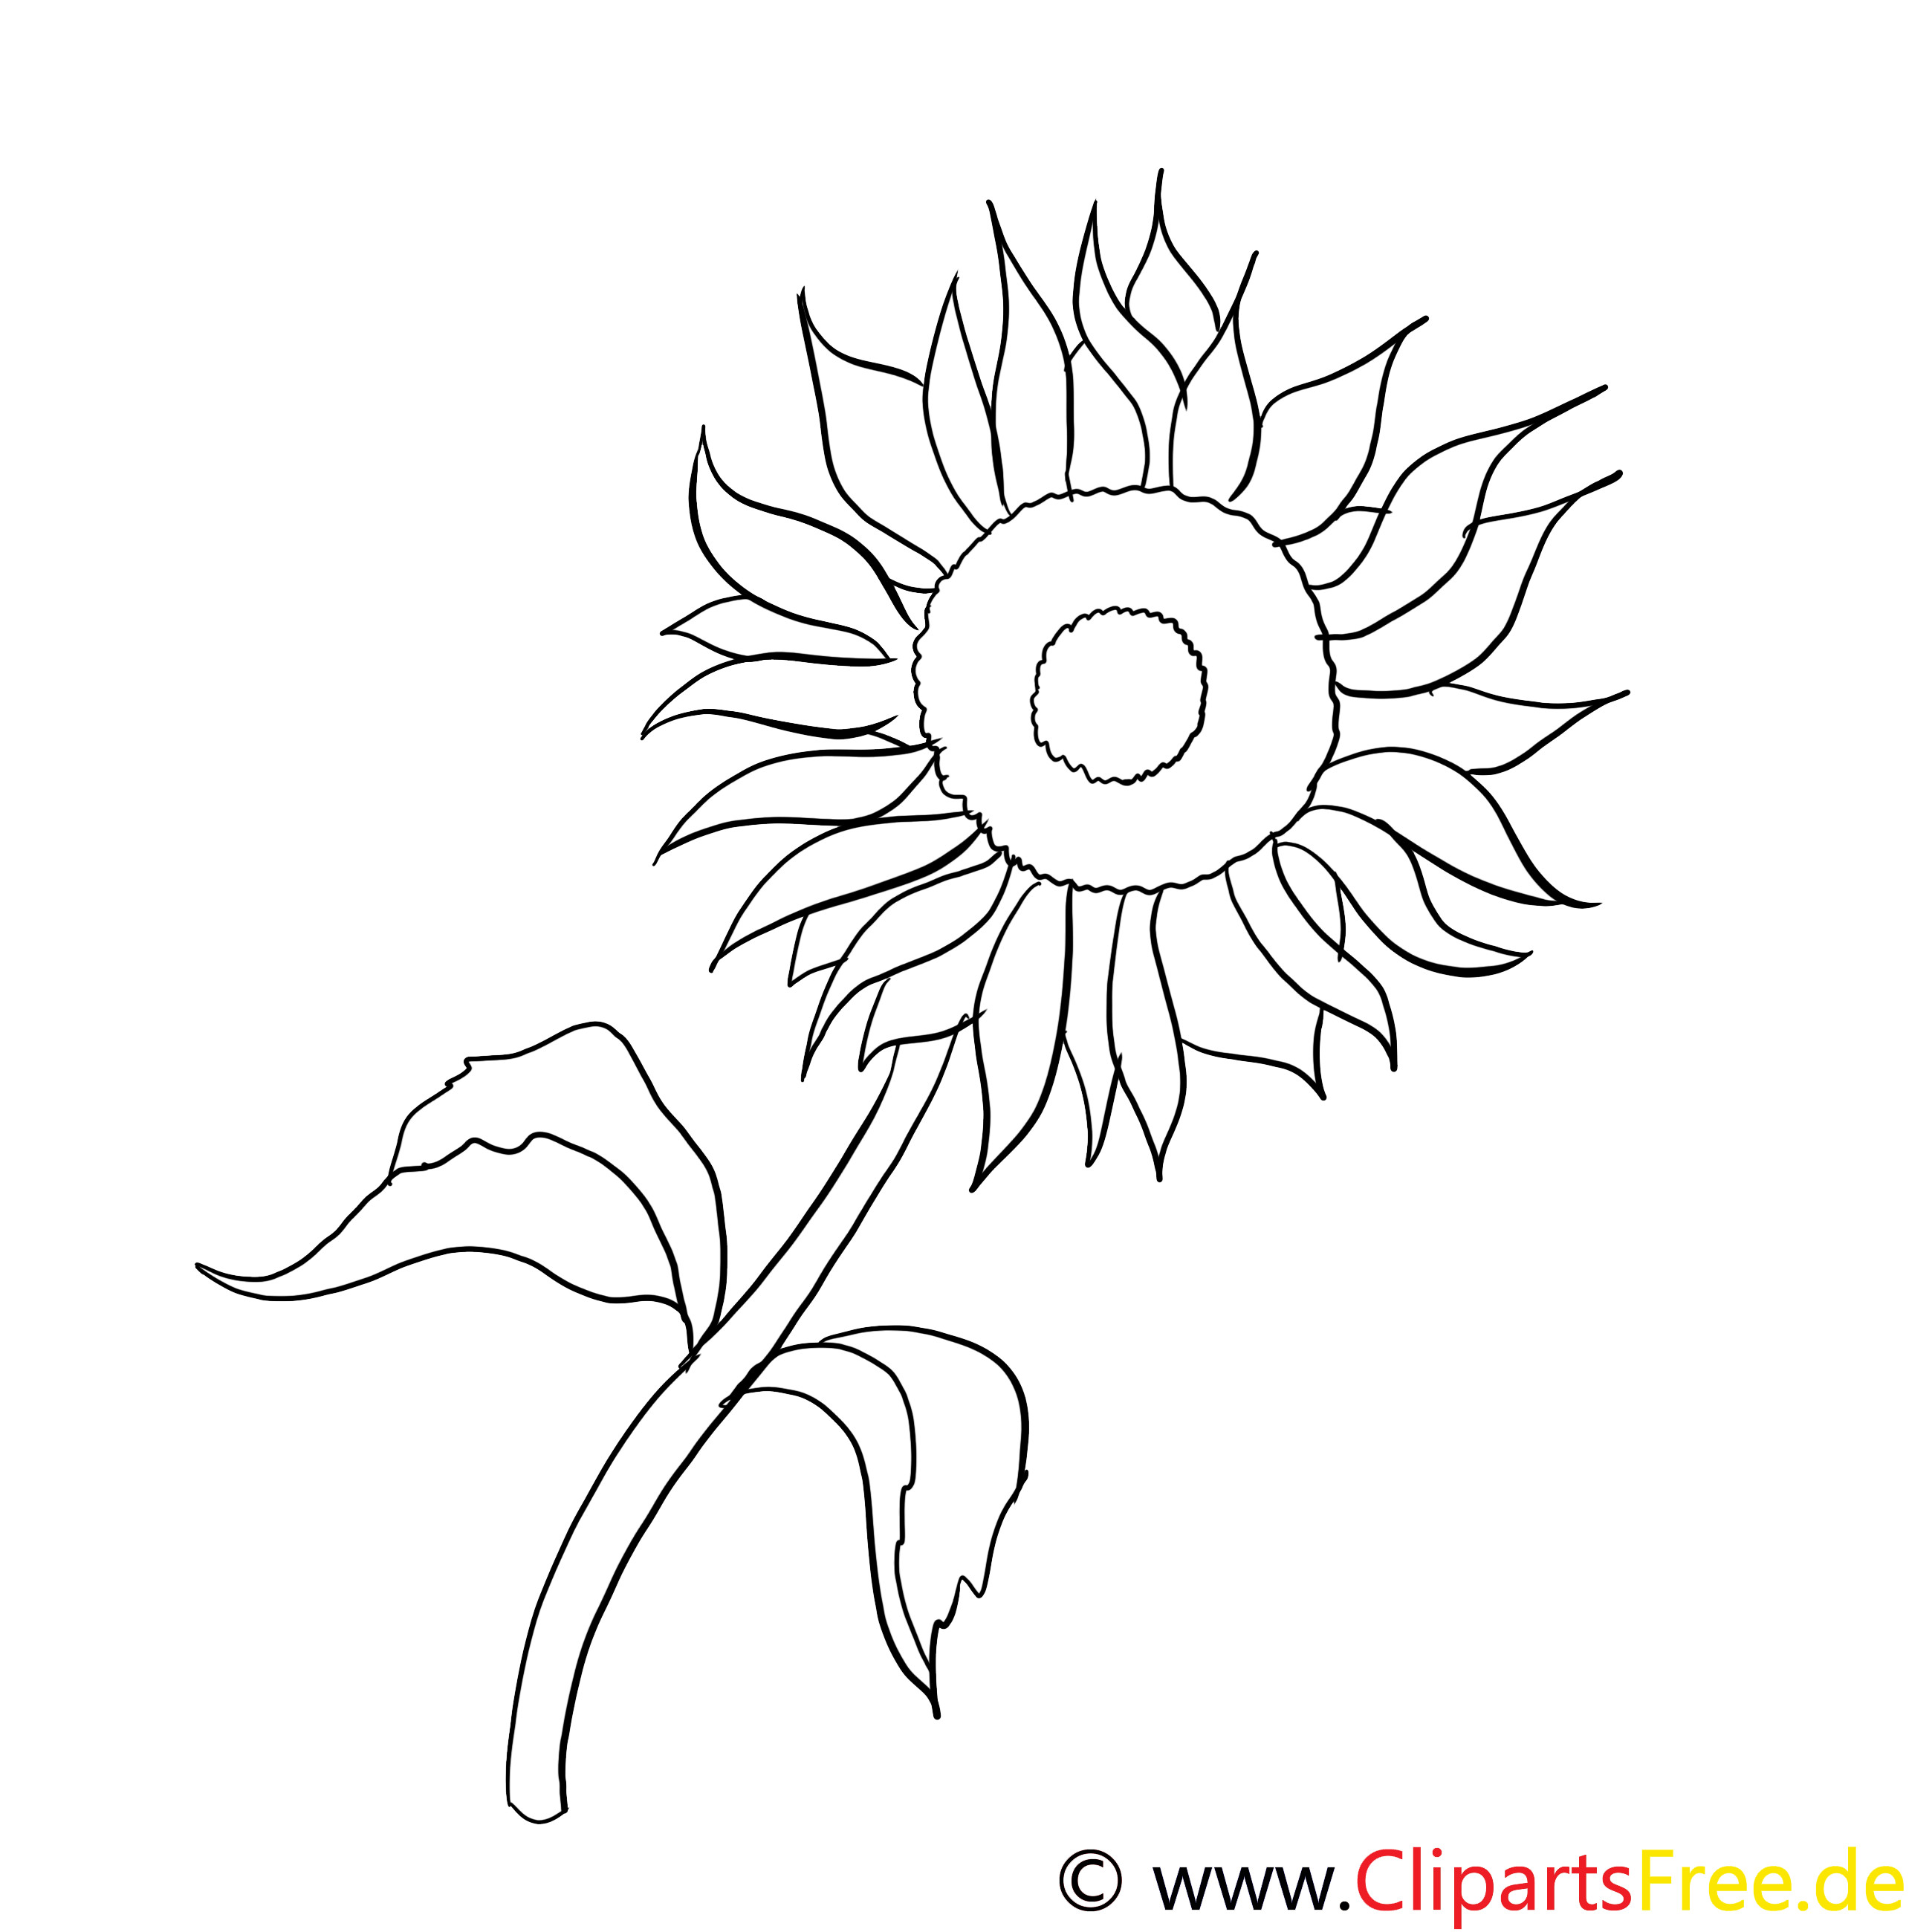 Sonnenblume Malvorlagen Kostenlos
 Sonnenblume Malvorlage kostenlos